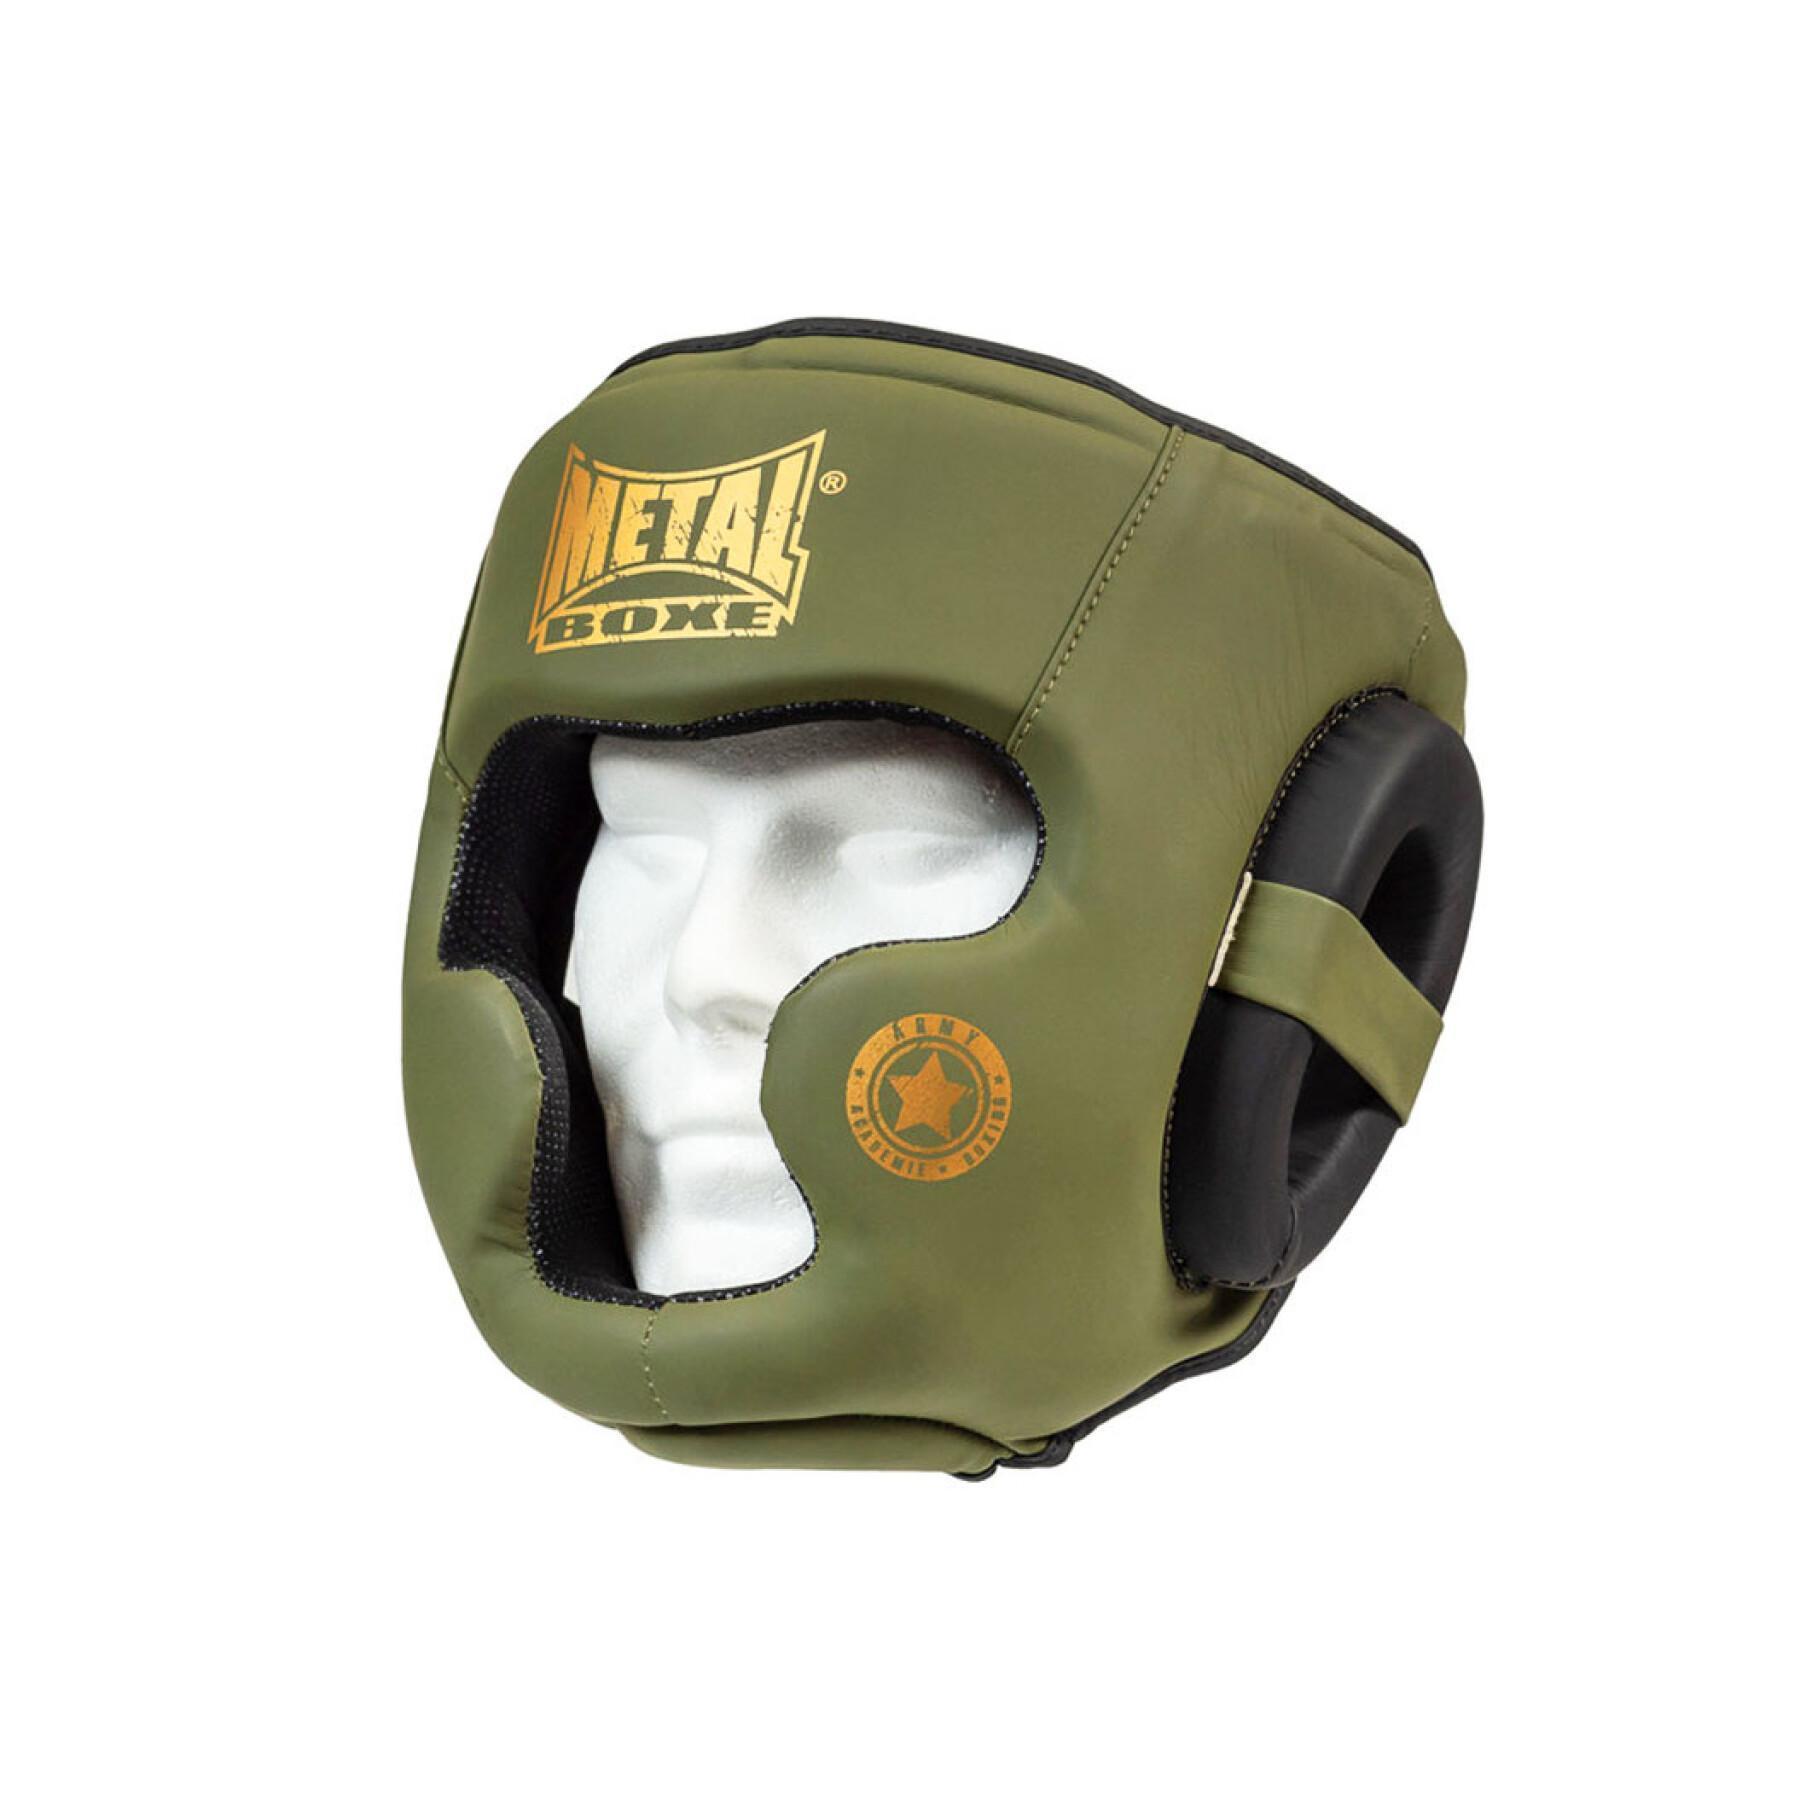 Boxing helmet Metal Boxe military